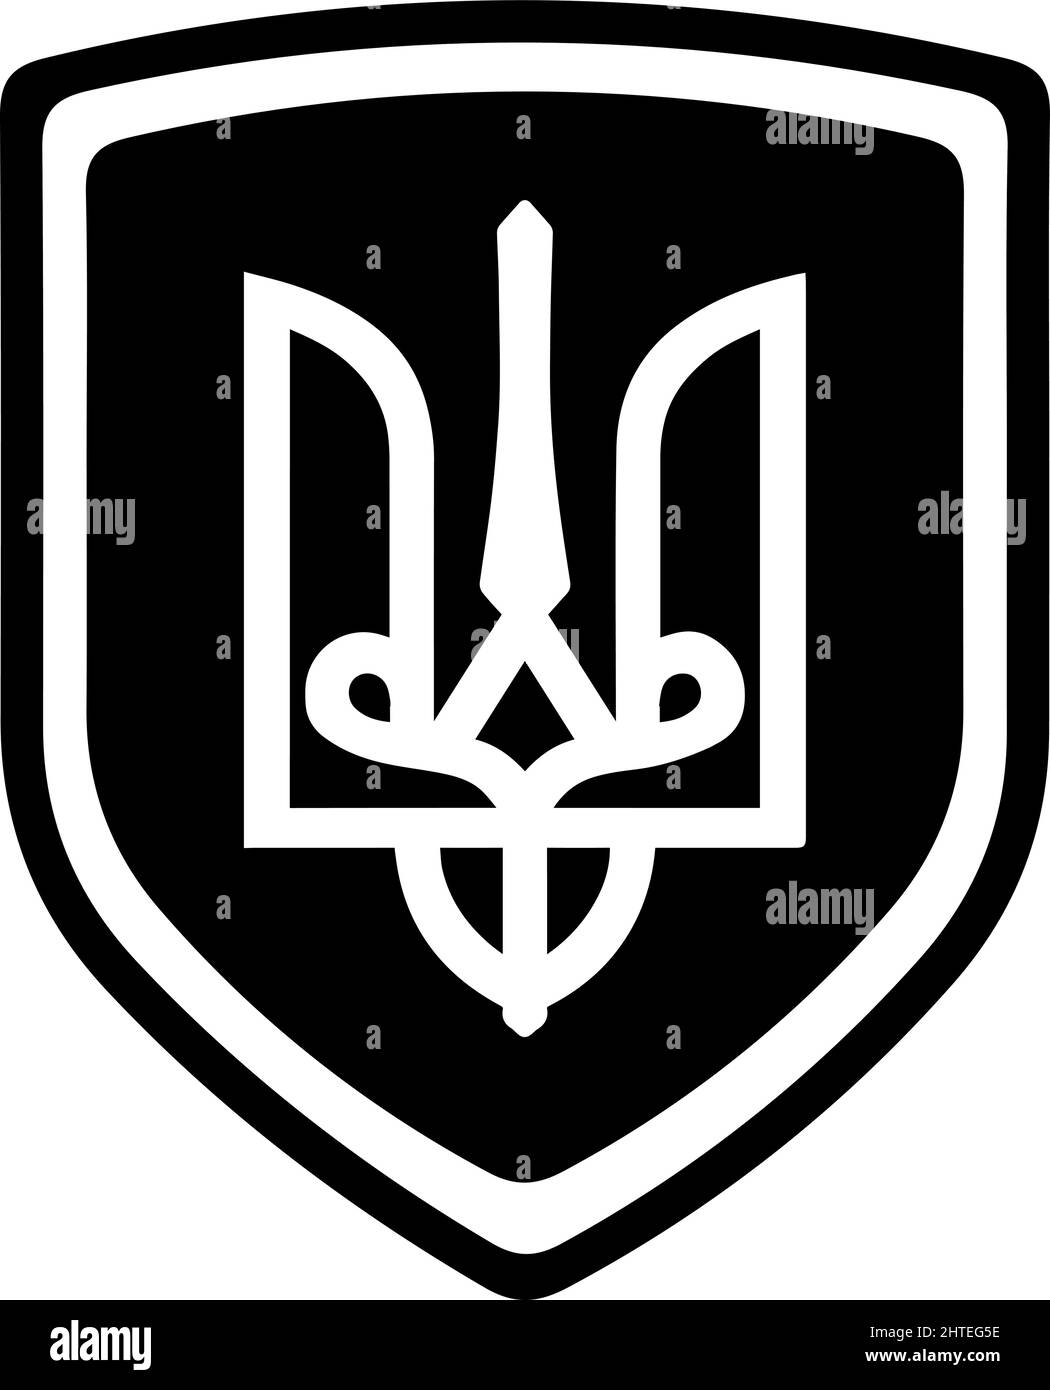 Wappen der Ukraine schwarz-weiß. Symbol auf Schild. Save Ukraine Concept.-SupplementalCategories+=Bilder Stock Vektor